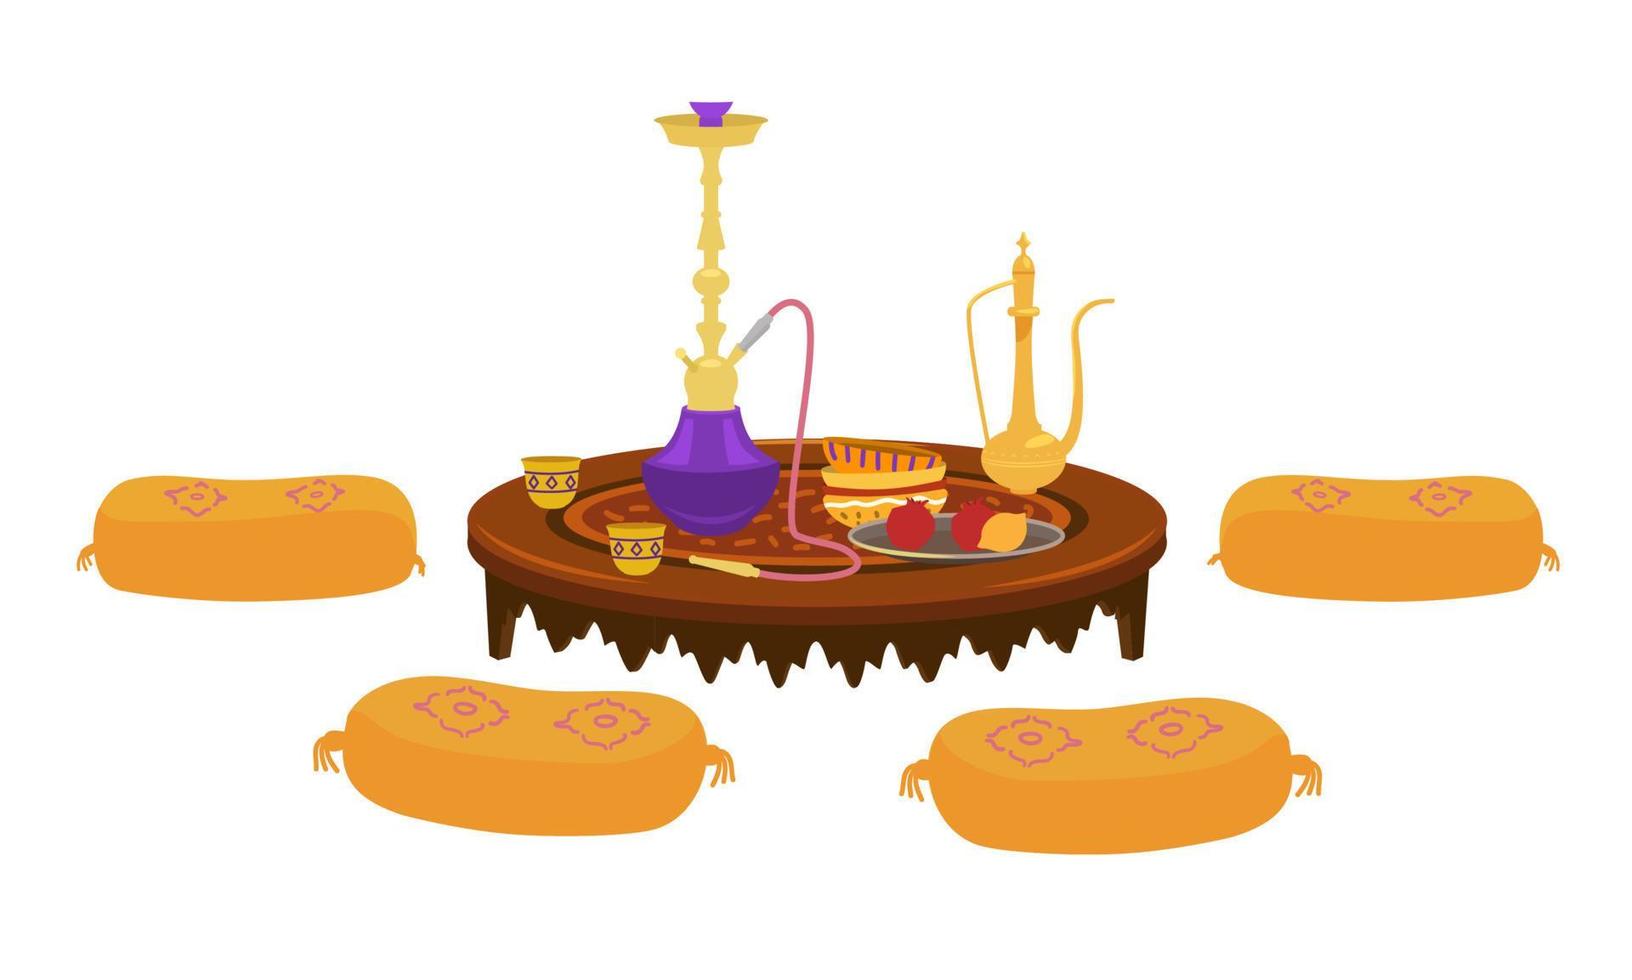 mesa baixa redonda árabe com bule de chá e narguilé com almofadas ao redor. prato com romãs e limão. móveis árabes de madeira tradicionais. elemento interior. vetor de desenhos animados.